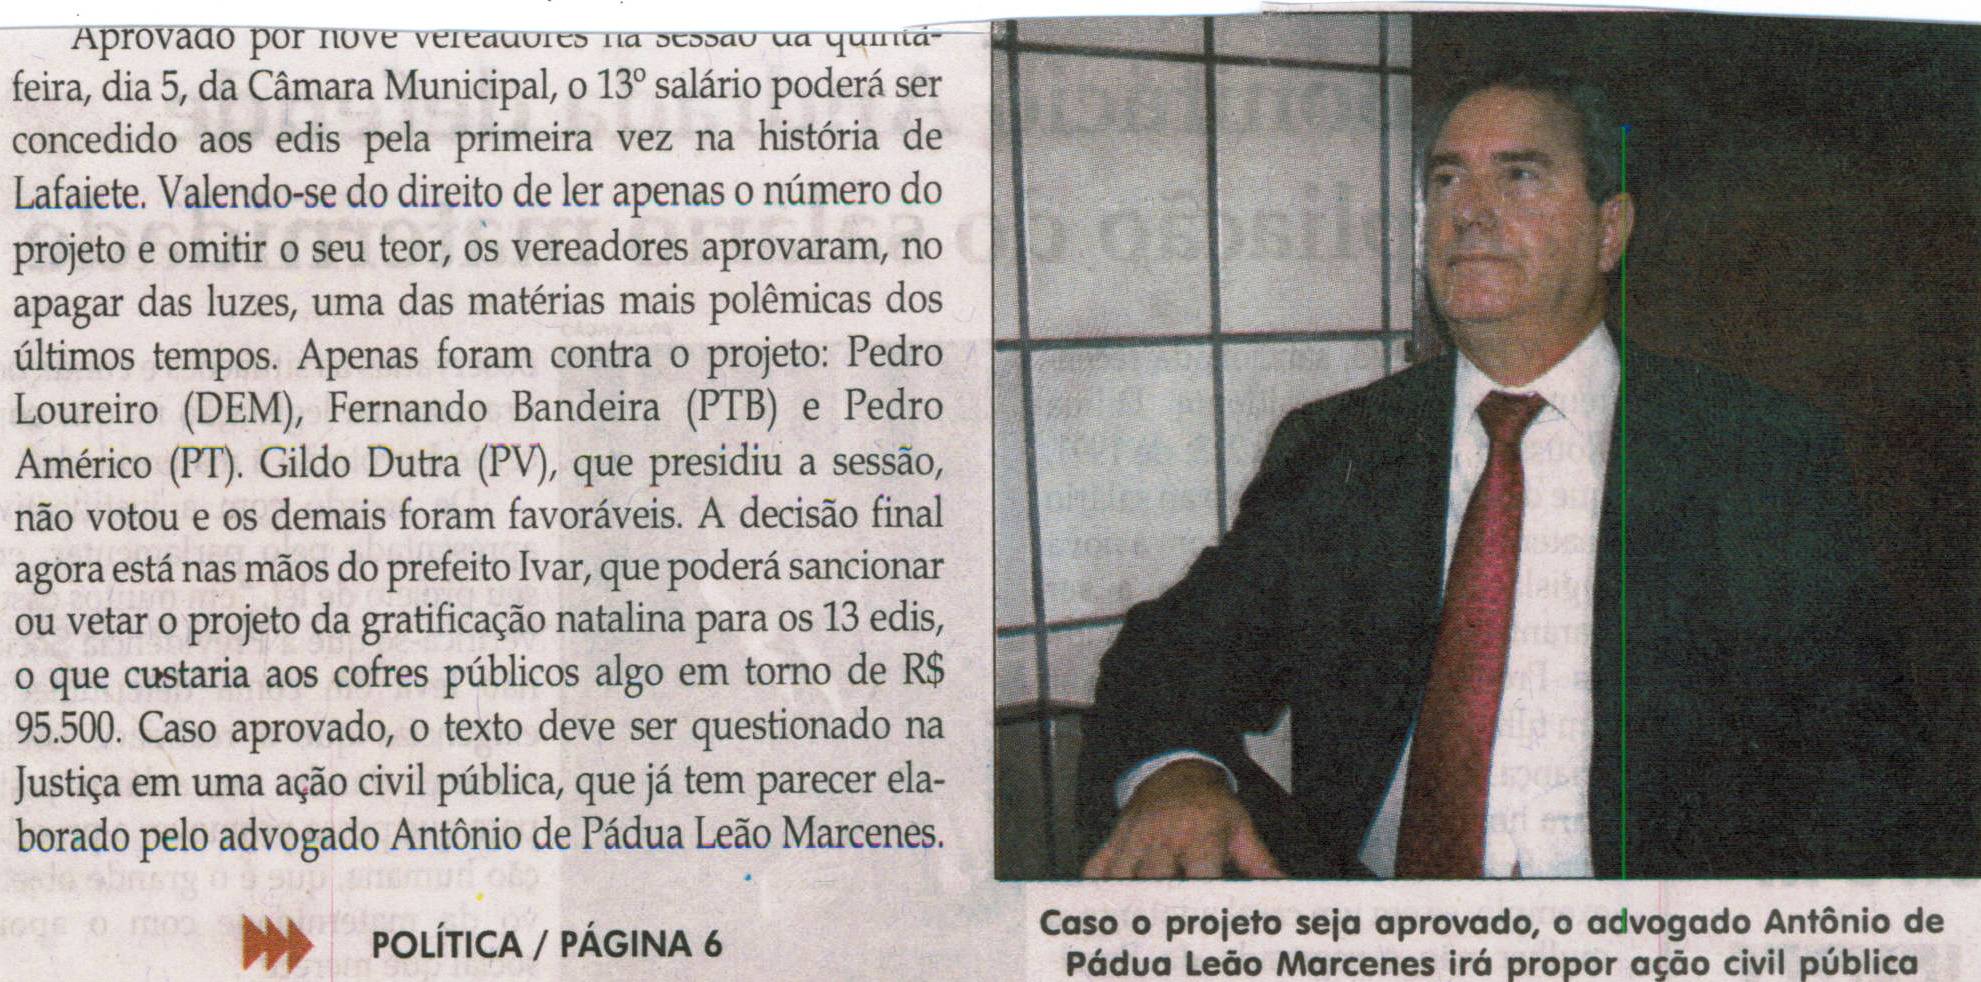 Advogado proporá Ação Civil Pública contra 13º de vereadores. Jornal Correio da Cidade, Conselheiro Lafaiete, 07 dez. 2013, p. 1.